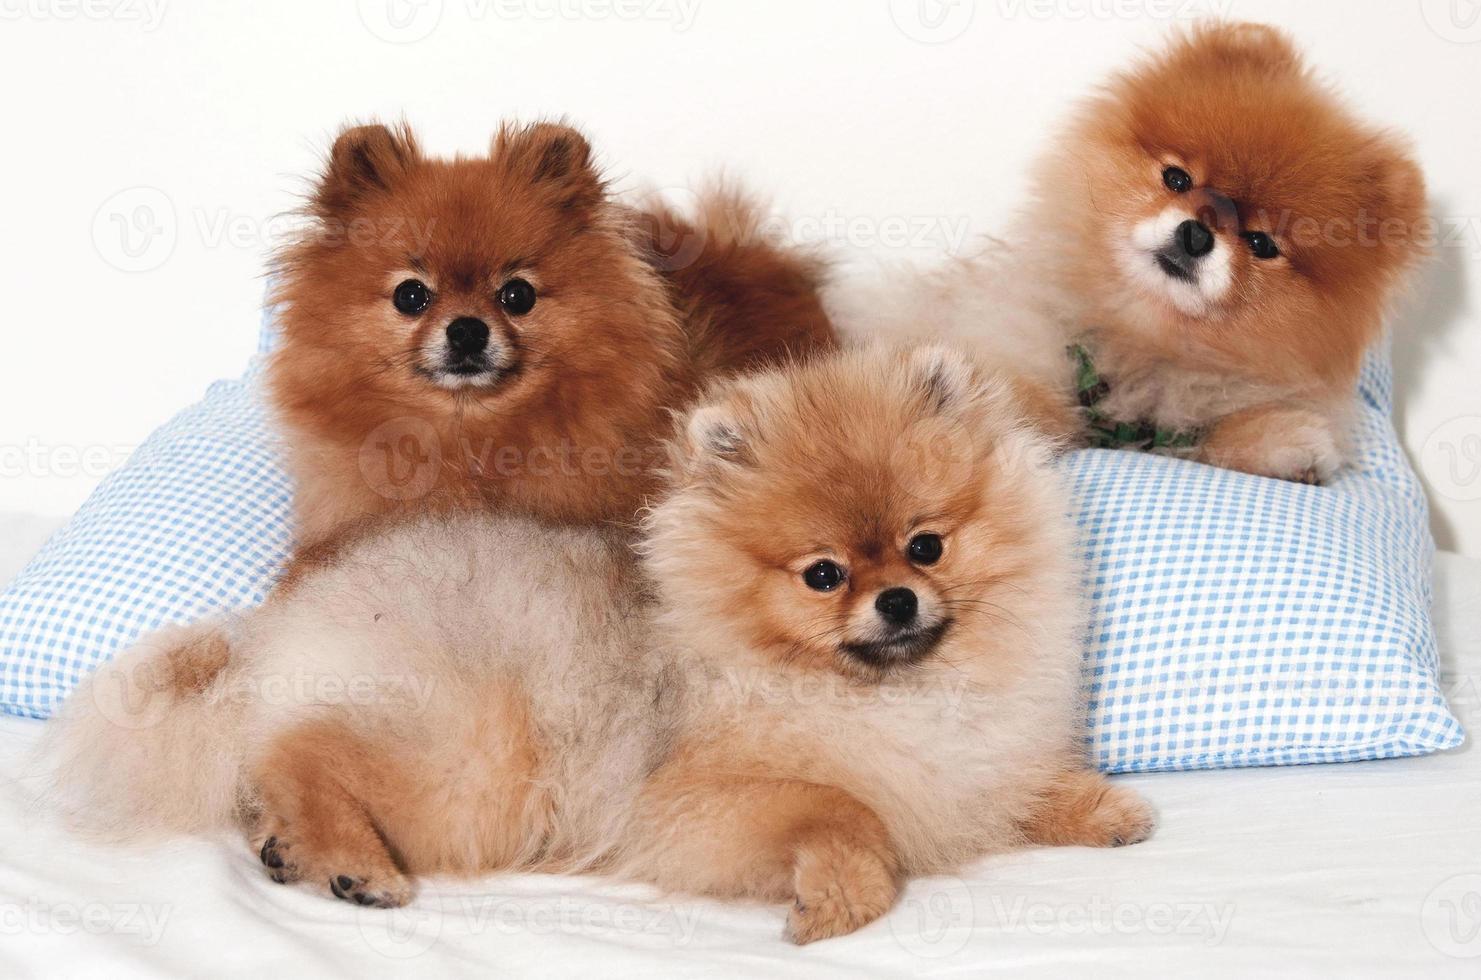 cuccioli di cane marrone divertente cucciolo di cane sorridente una zampa e cucciolo carino su bianco foto